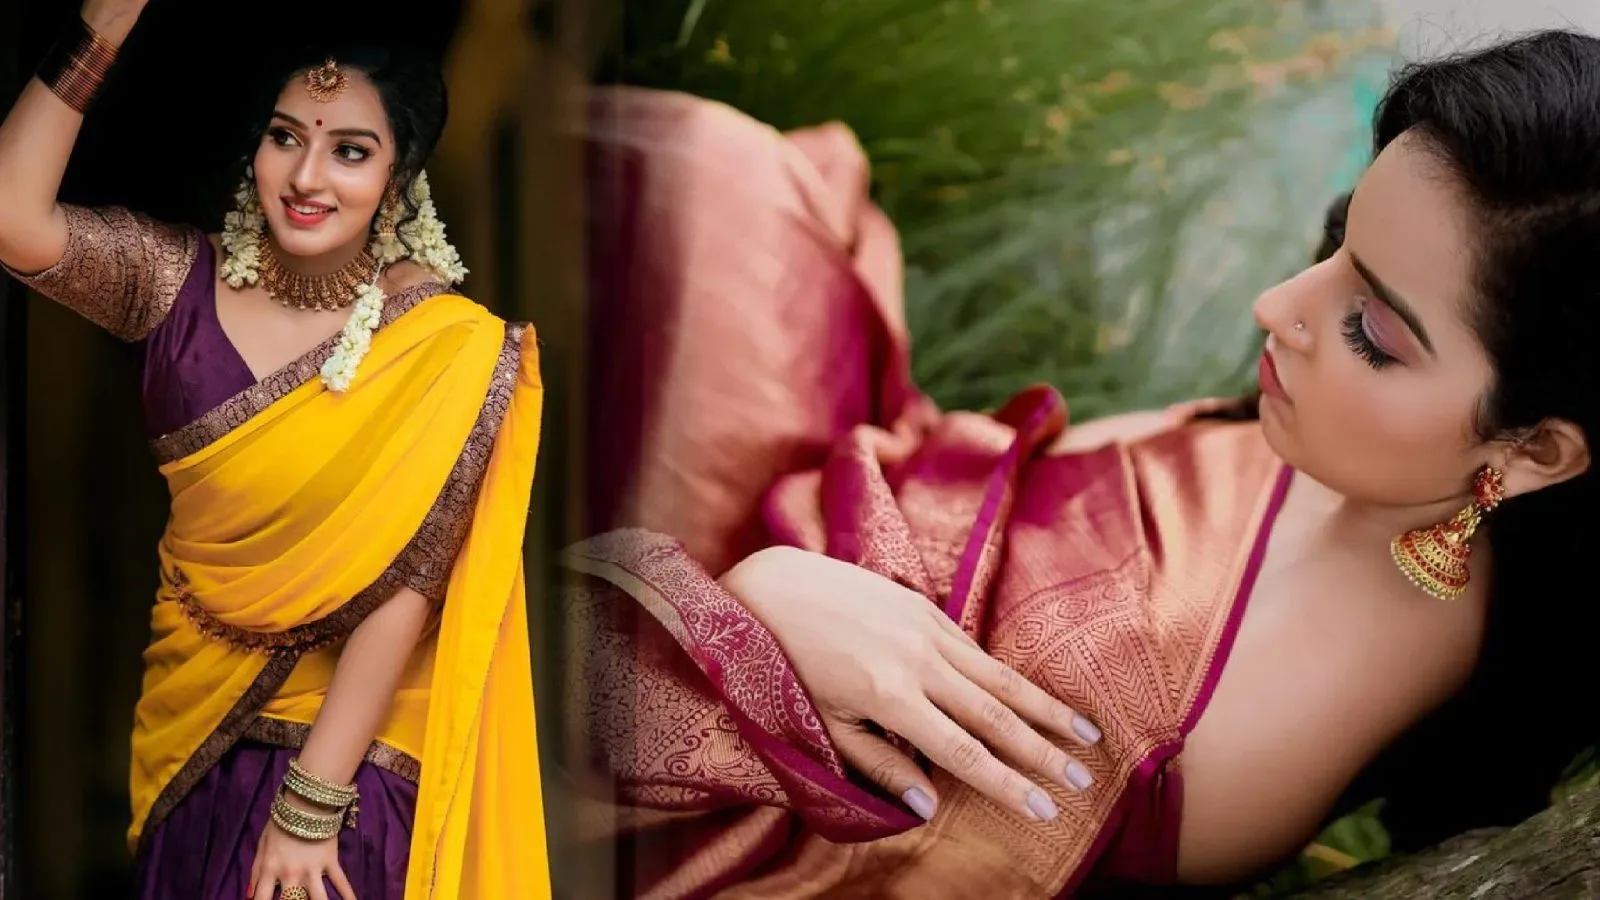 Malayalam Actress Malavika Menon stills in traditional saree